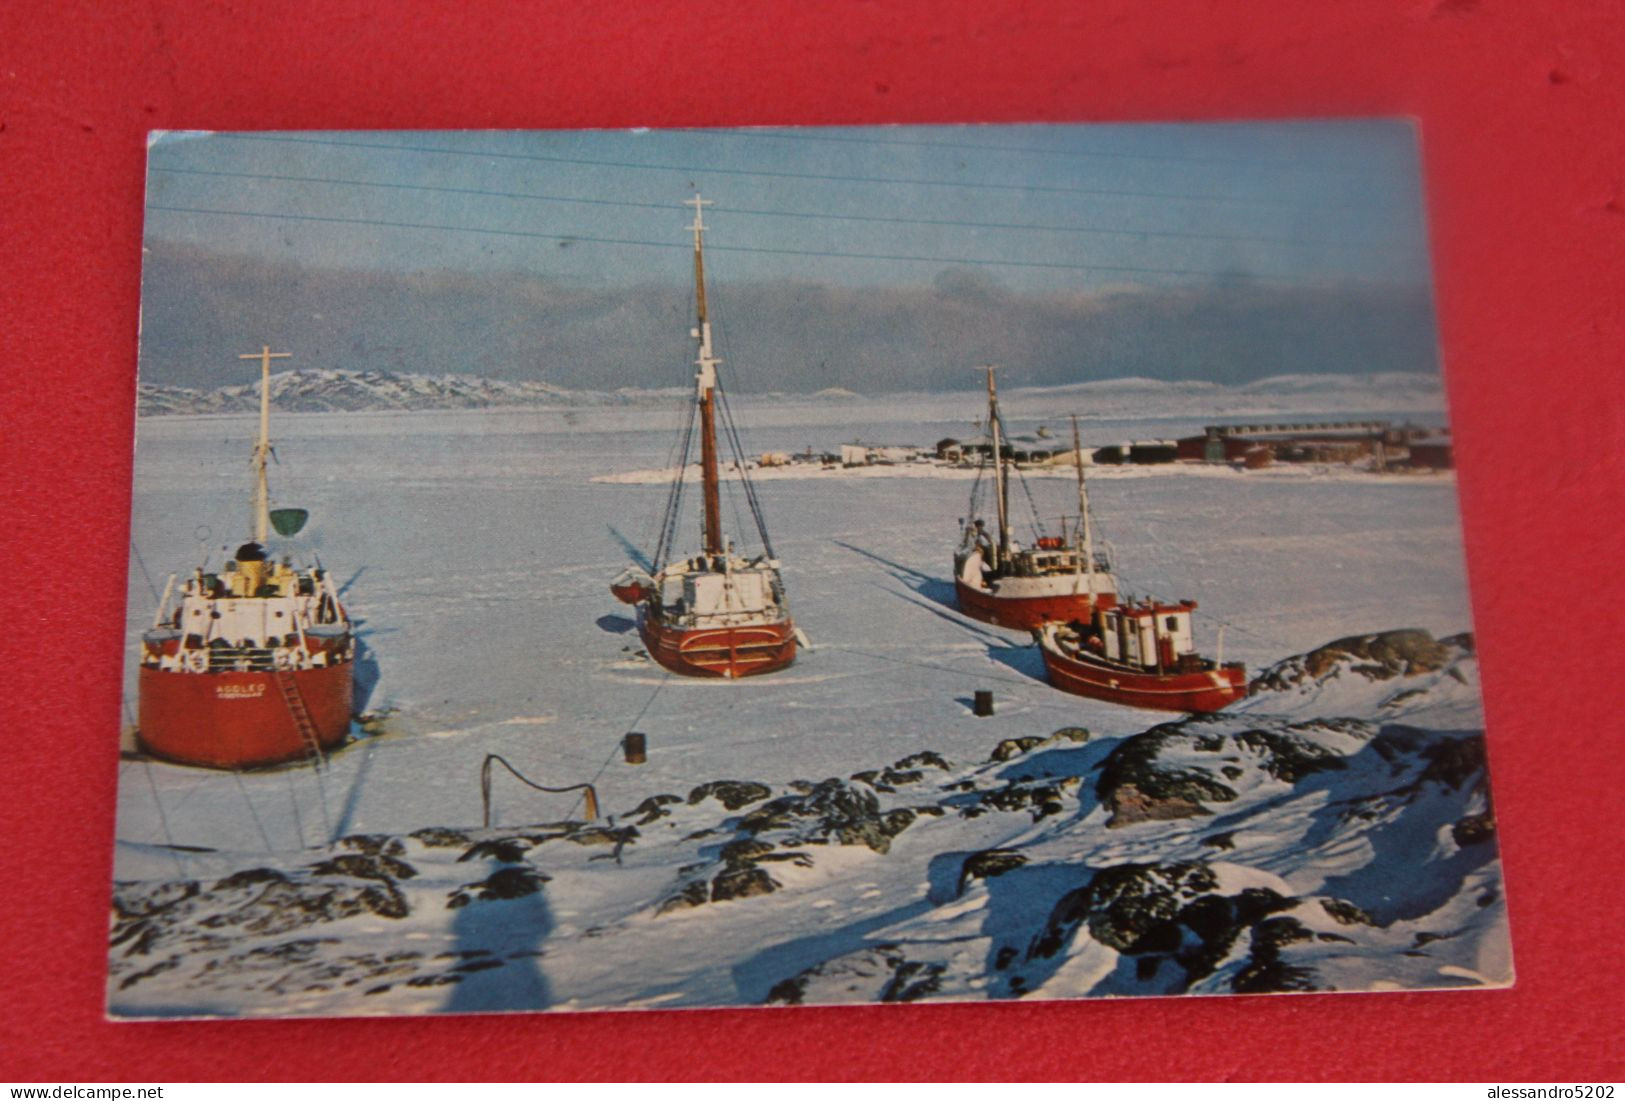 Gronland Greenland Egedesminde 1972 - Groenlandia